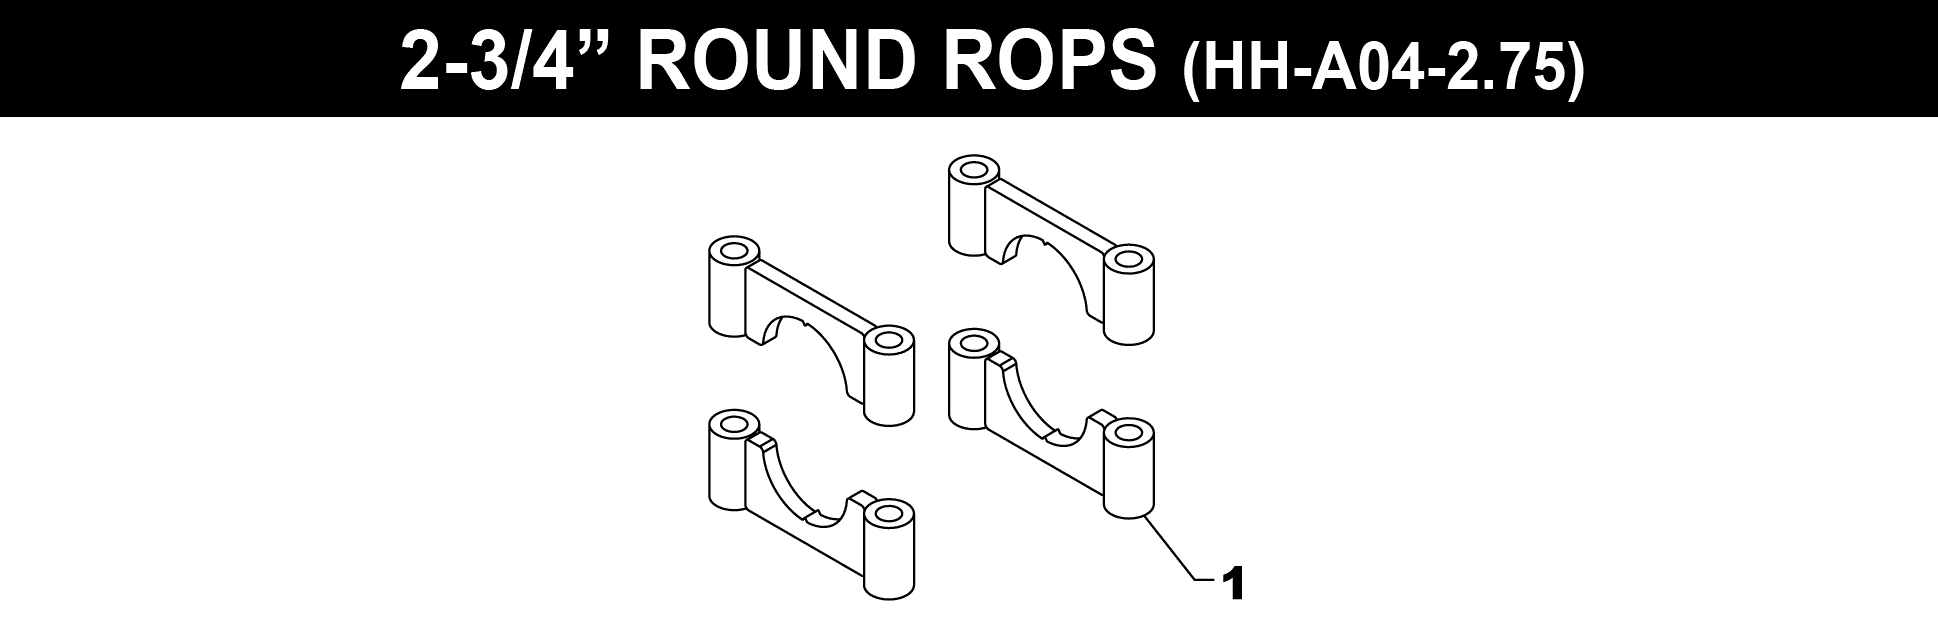 2-3/4" ROUND ROPS BRACKET